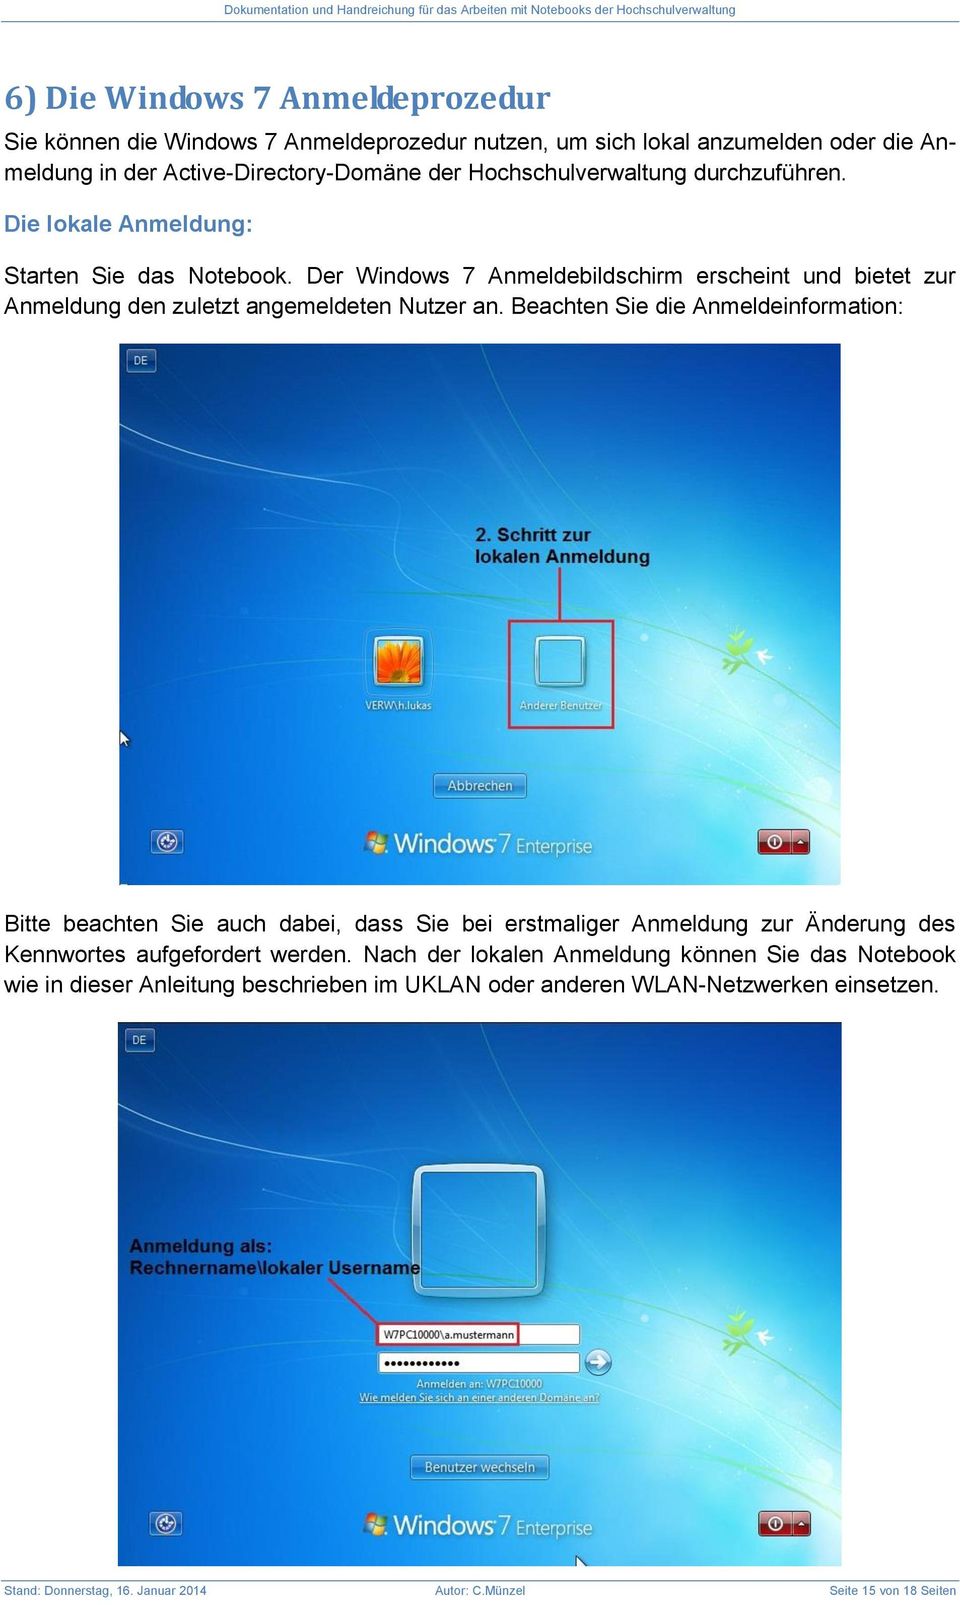 Der Windows 7 Anmeldebildschirm erscheint und bietet zur Anmeldung den zuletzt angemeldeten Nutzer an.